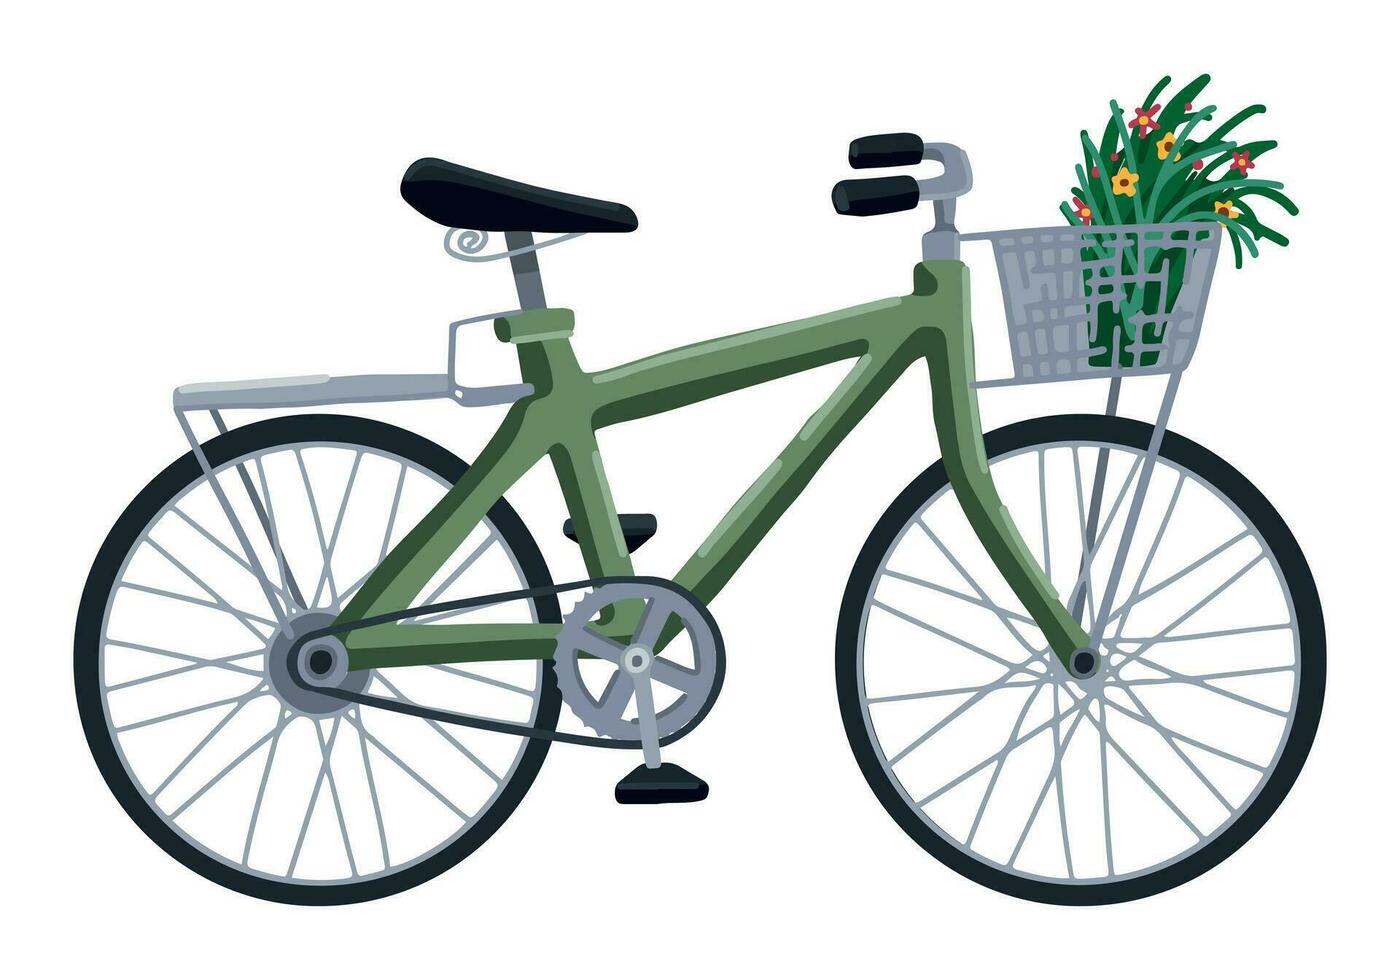 bicicleta con cesta de flores clipart. verano ocio ocupaciones deporte garabatear aislado en blanco. de colores vector ilustración en dibujos animados estilo.